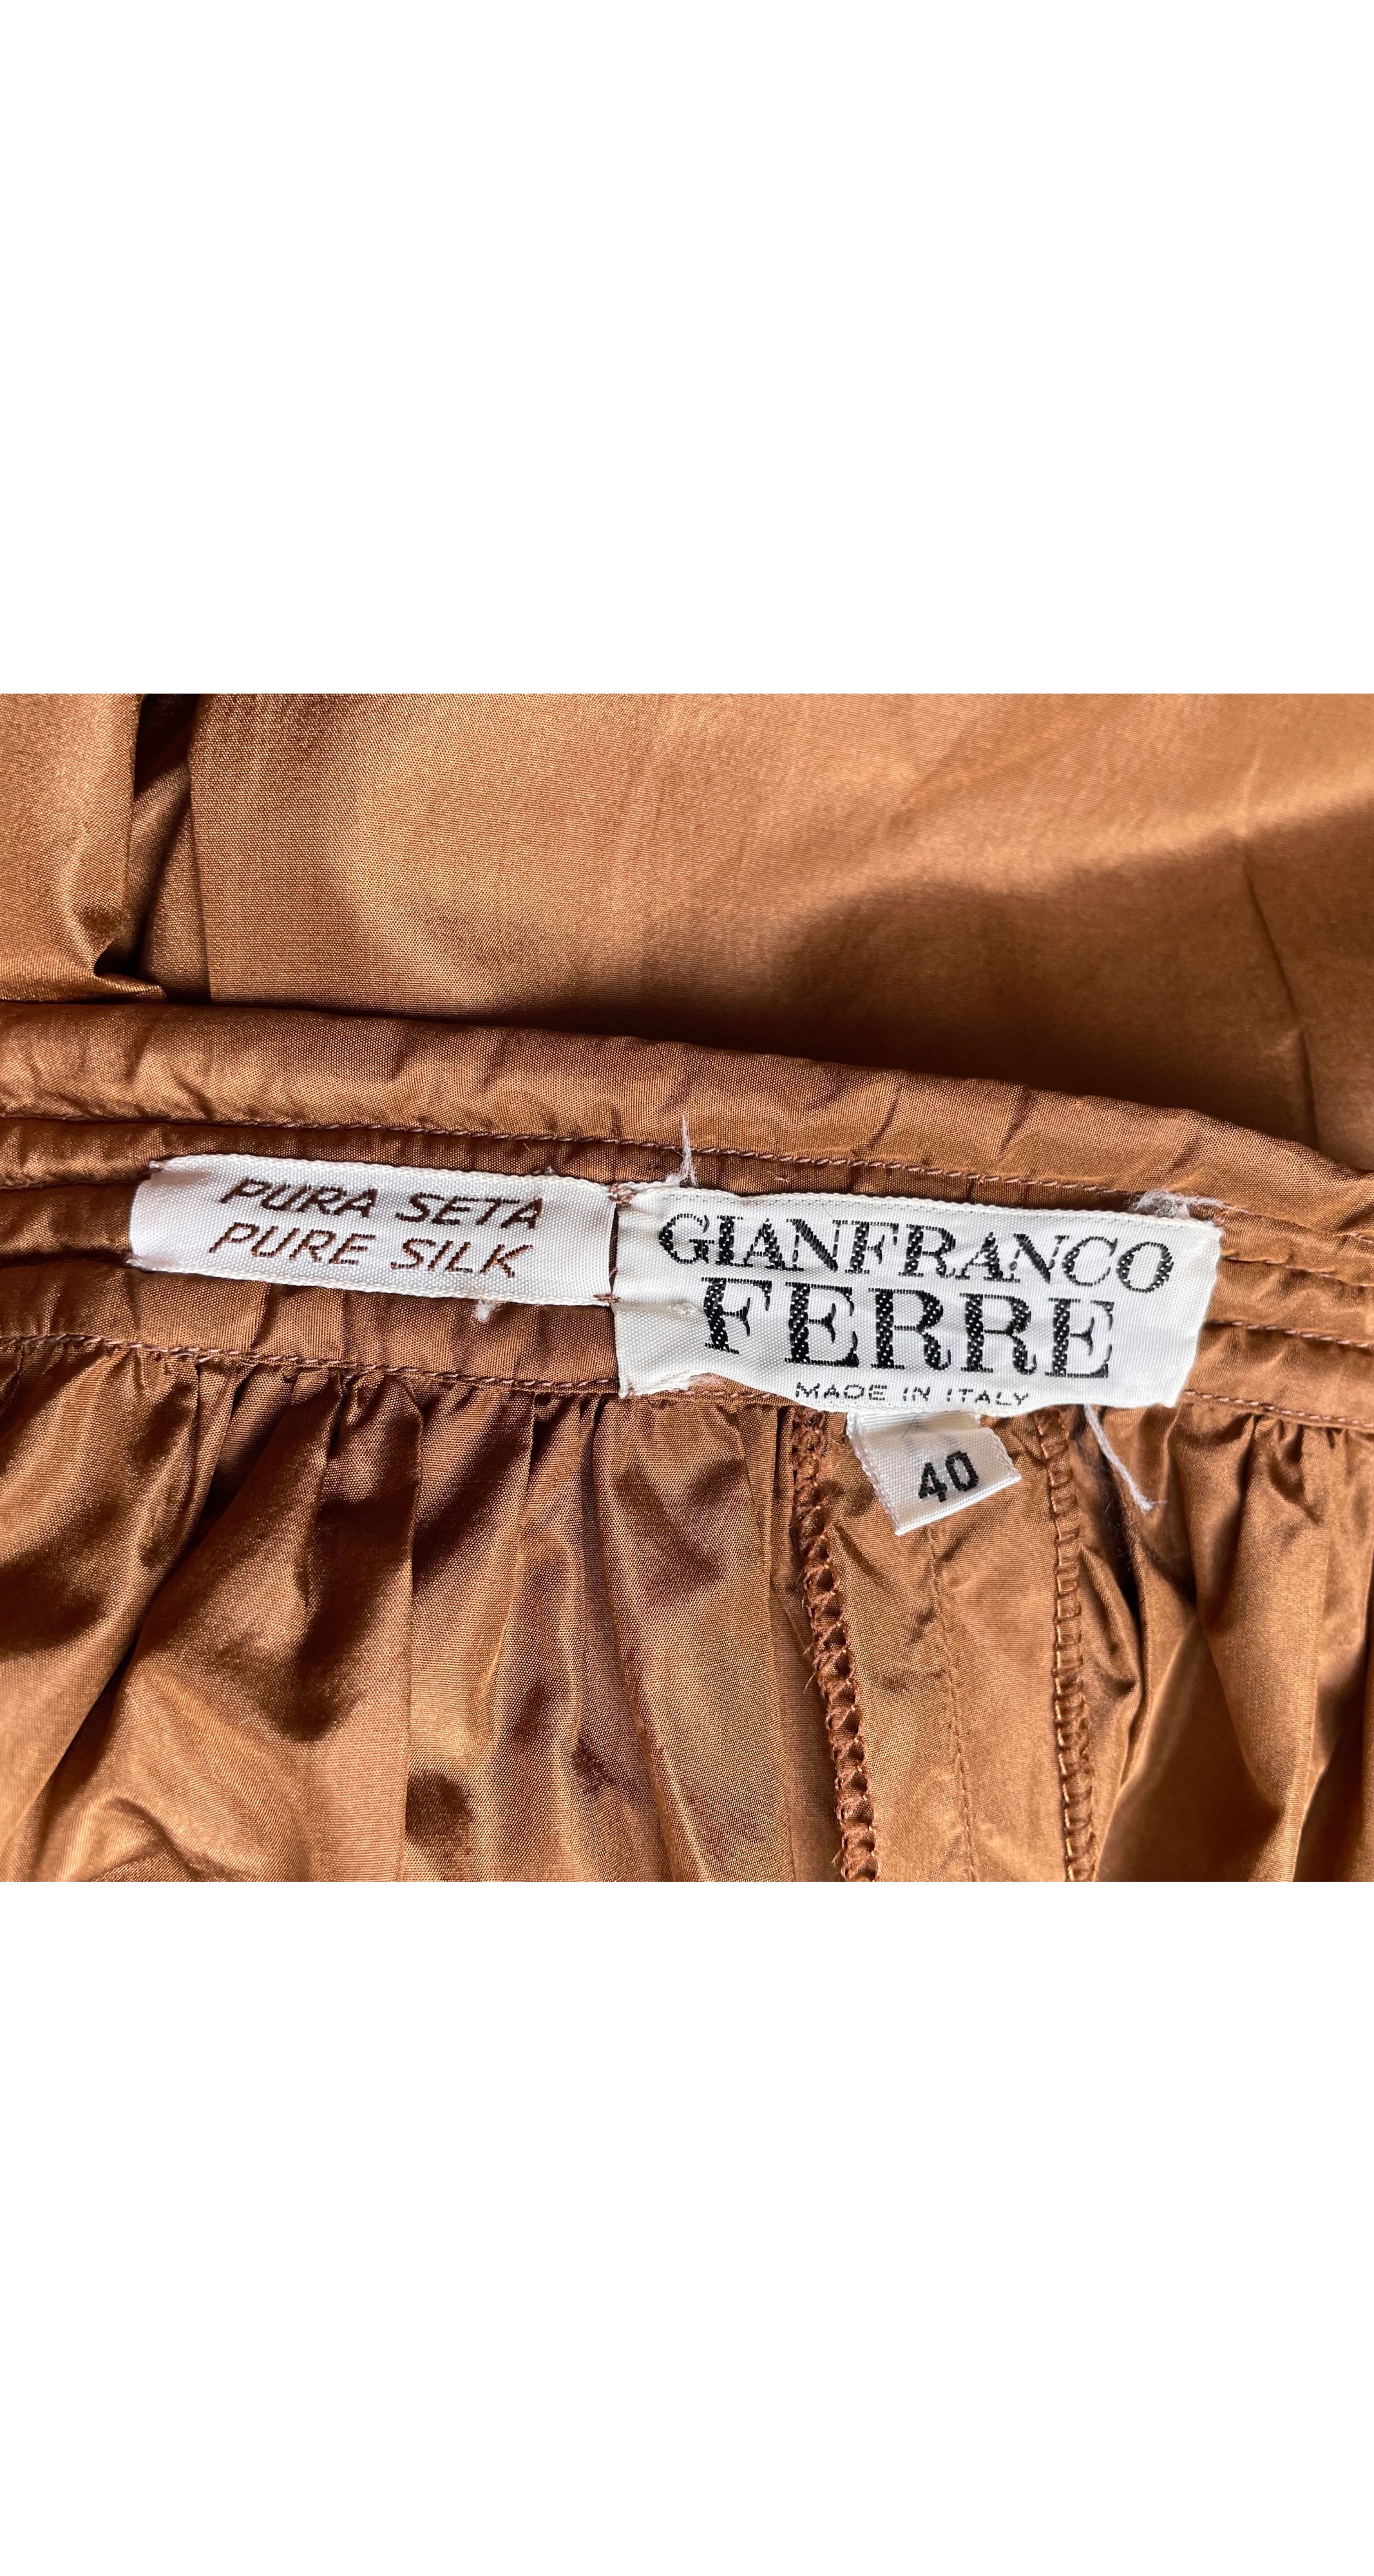 1981 S/S Brown Silk Taffeta Quilted Trim Capri Pants